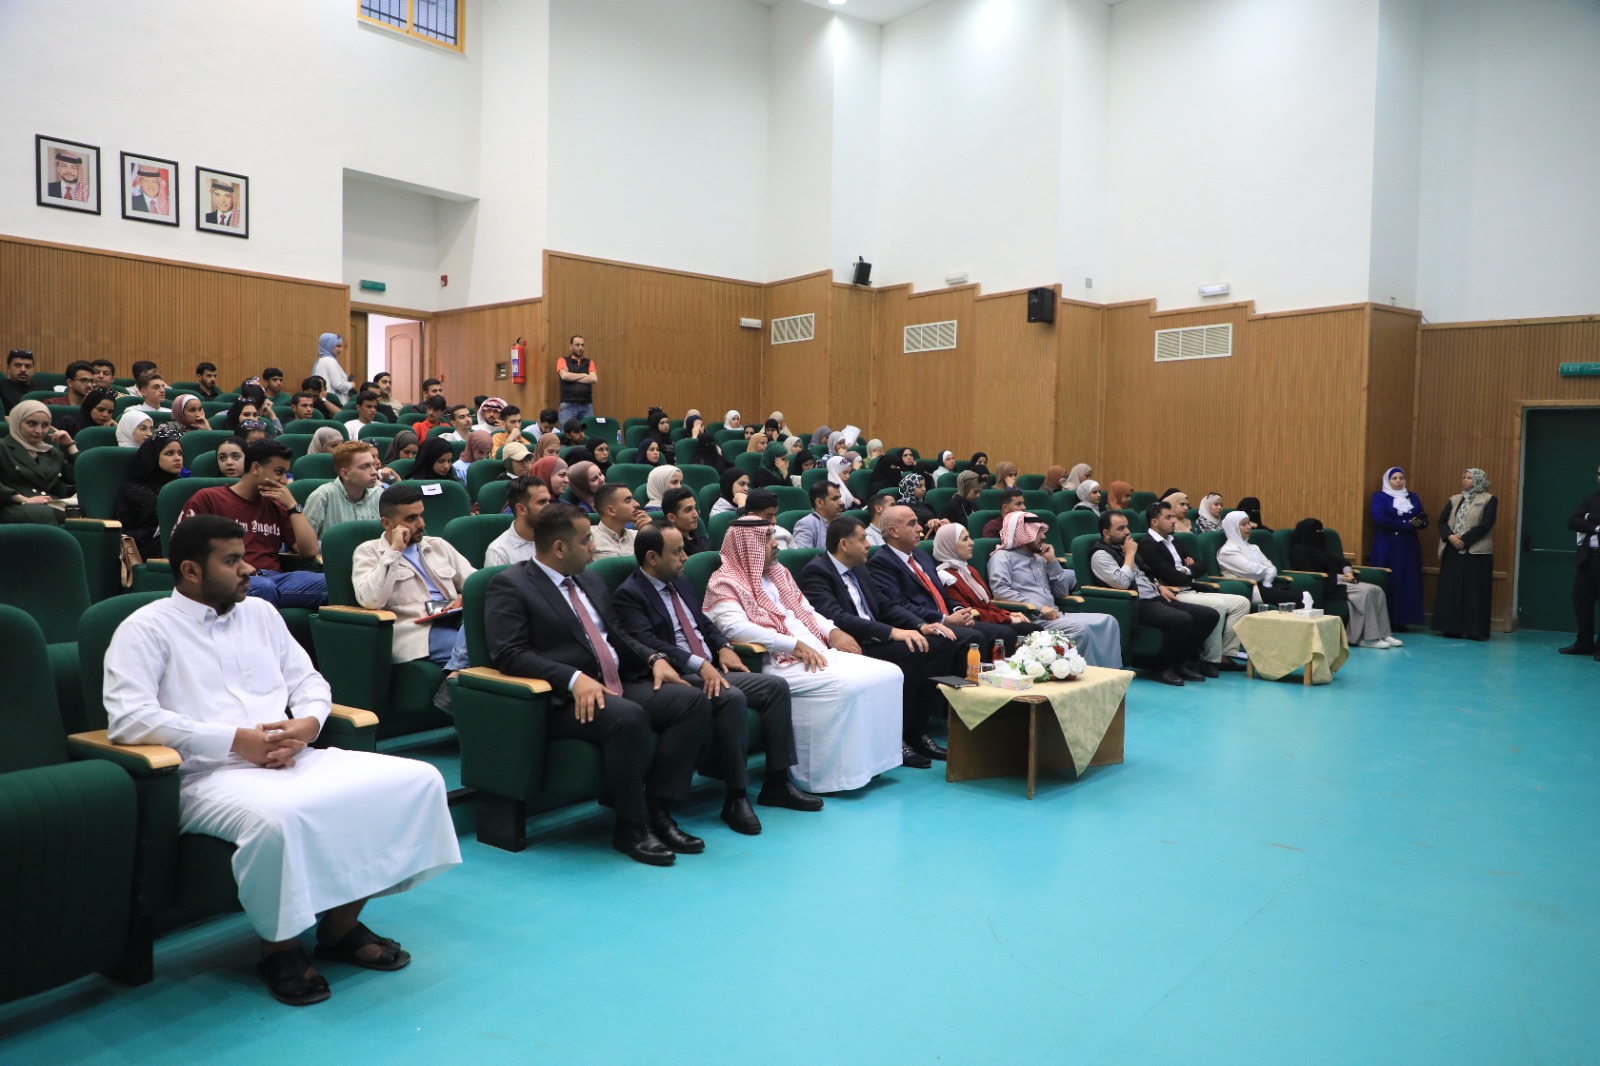 جامعة الحسين بن طلال ومركز تطوير الاعمال - BDC يفتحان آفاقًا جديدة لتمكين الشباب من خلال تنمية مهاراتهم وتعزيز ريادتهم